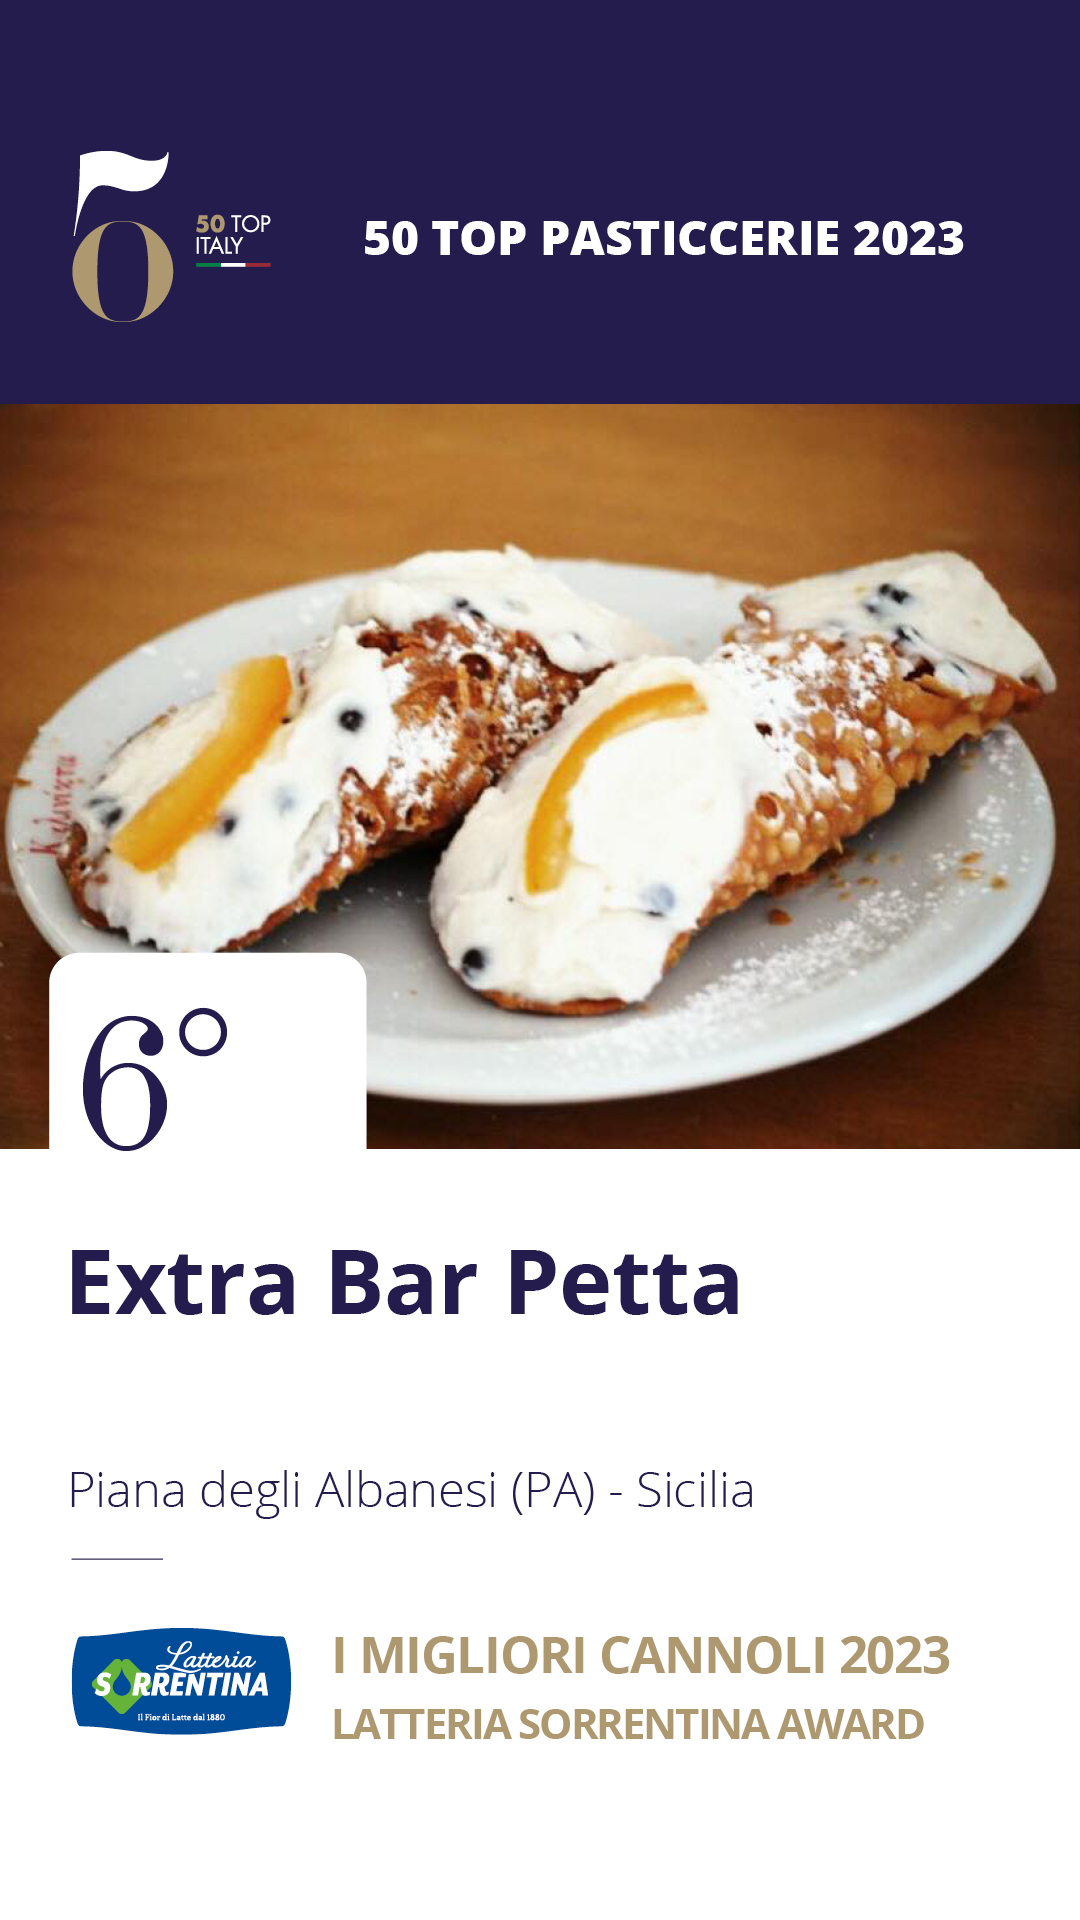 6 - Extra Bar Petta - Piana degli Albanesi (PA), Sicilia